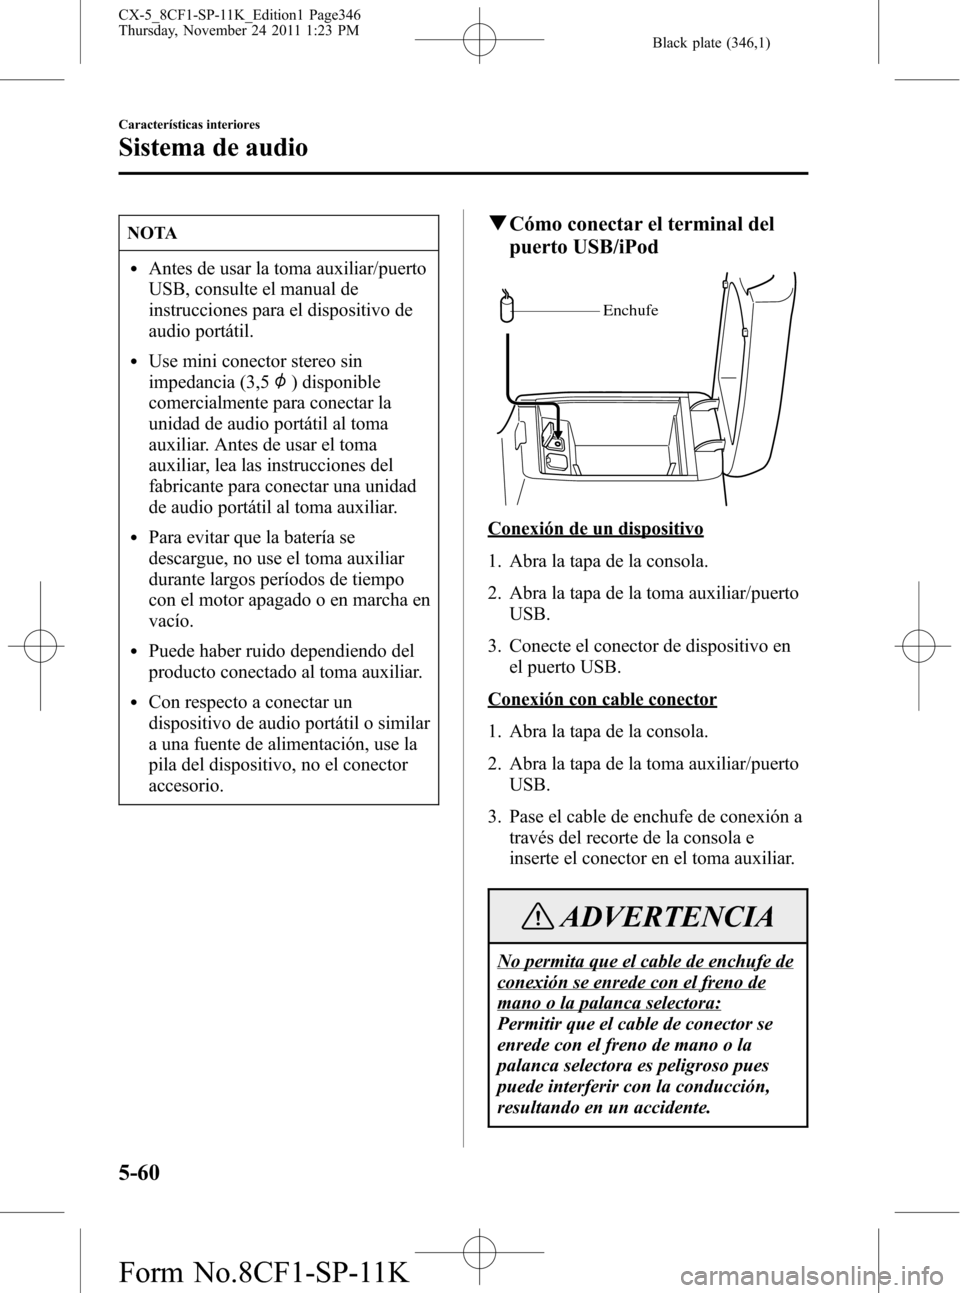 MAZDA MODEL CX-5 2012  Manual del propietario (in Spanish)  Black plate (346,1)
NOTA
lAntes de usar la toma auxiliar/puerto
USB, consulte el manual de
instrucciones para el dispositivo de
audio portátil.
lUse mini conector stereo sin
impedancia (3,5
) disponi